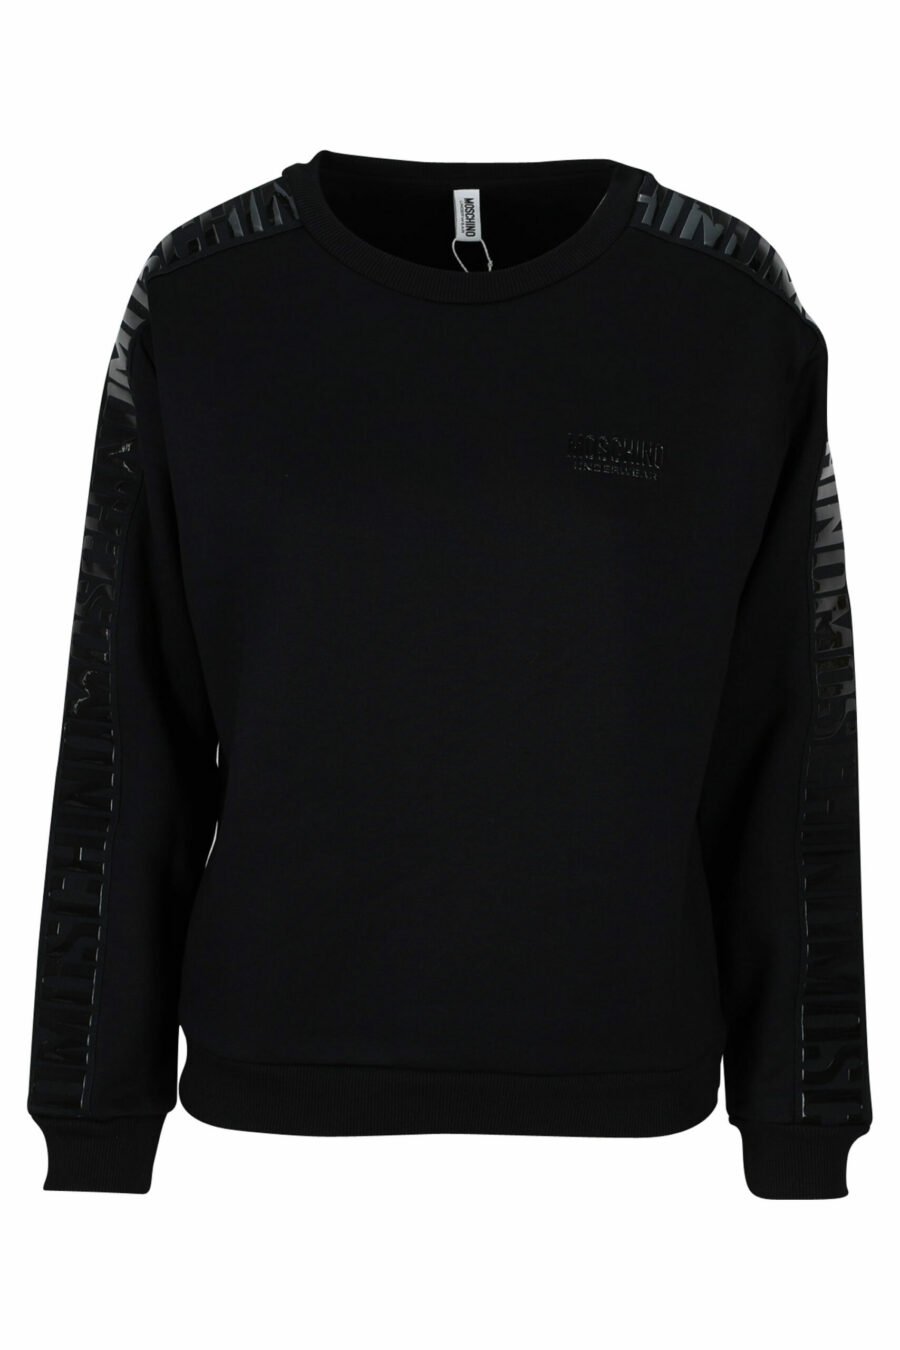 Schwarzes Sweatshirt mit monochromem Bandlogo an den Seiten - 889316614961 skaliert